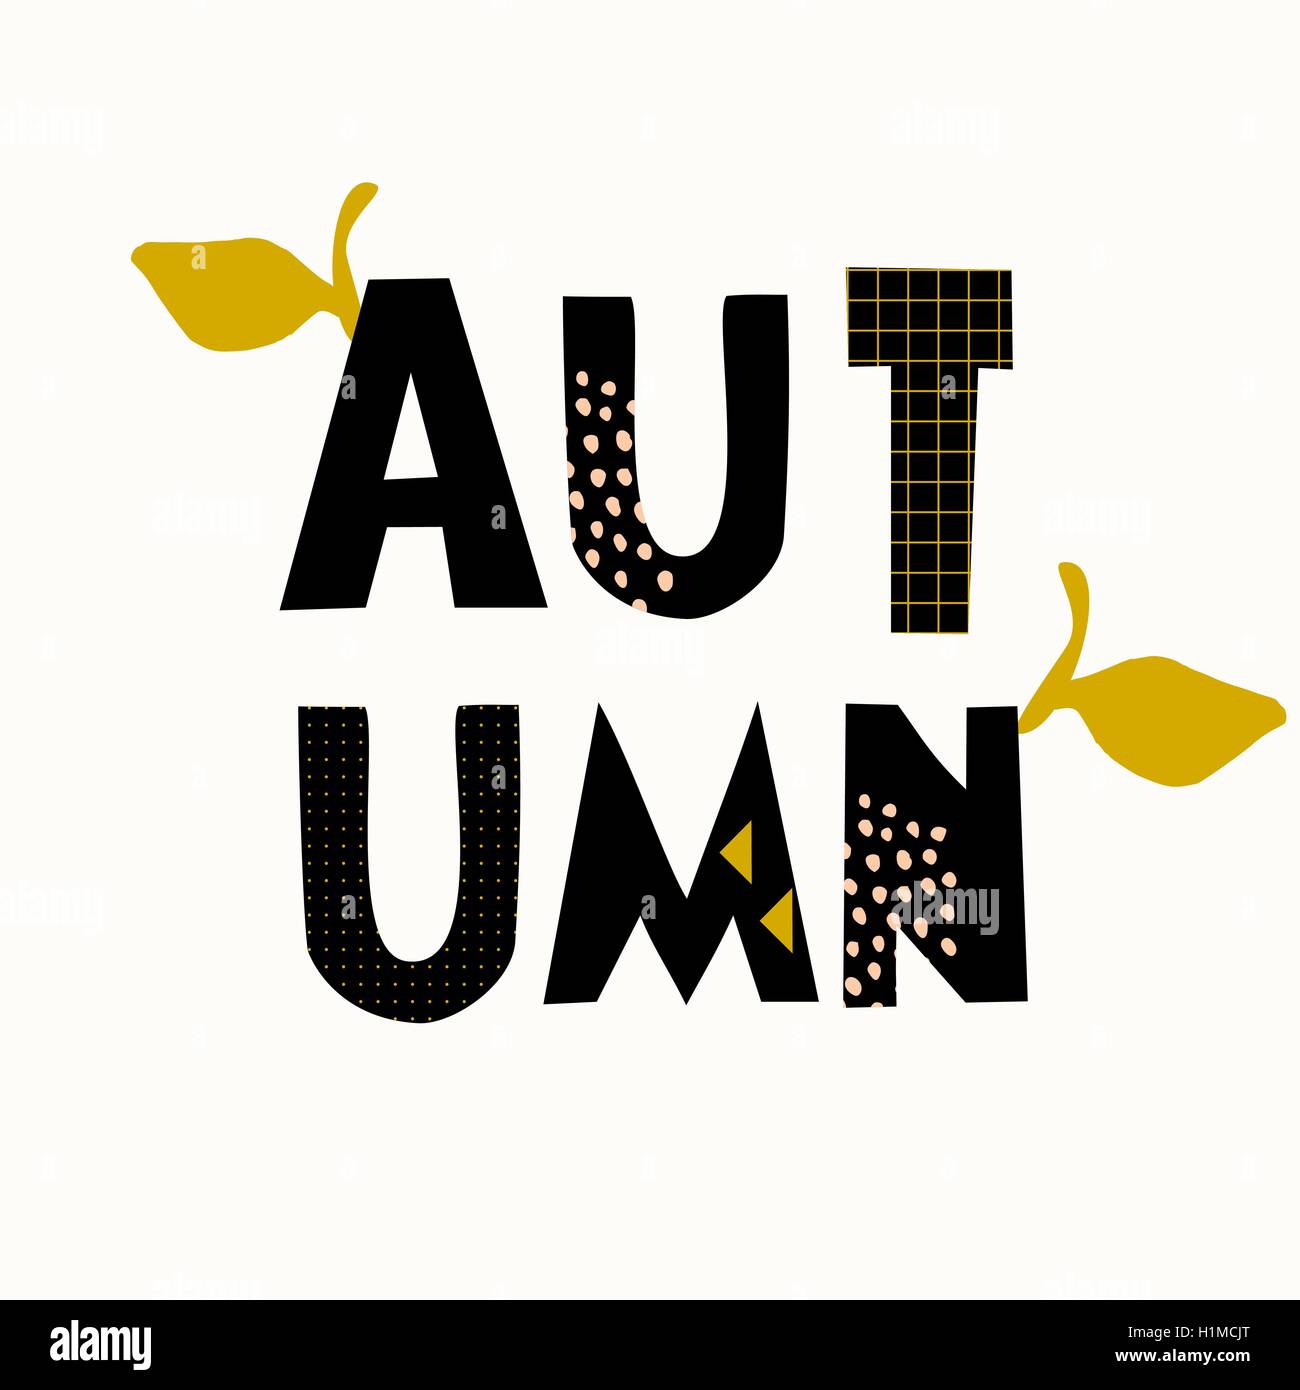 Typografischen Stildesign für die Herbstsaison mit schwarzen Buchstaben, Blatt Dekoration und geometrische Elemente, isoliert auf weißem bac Stock Vektor